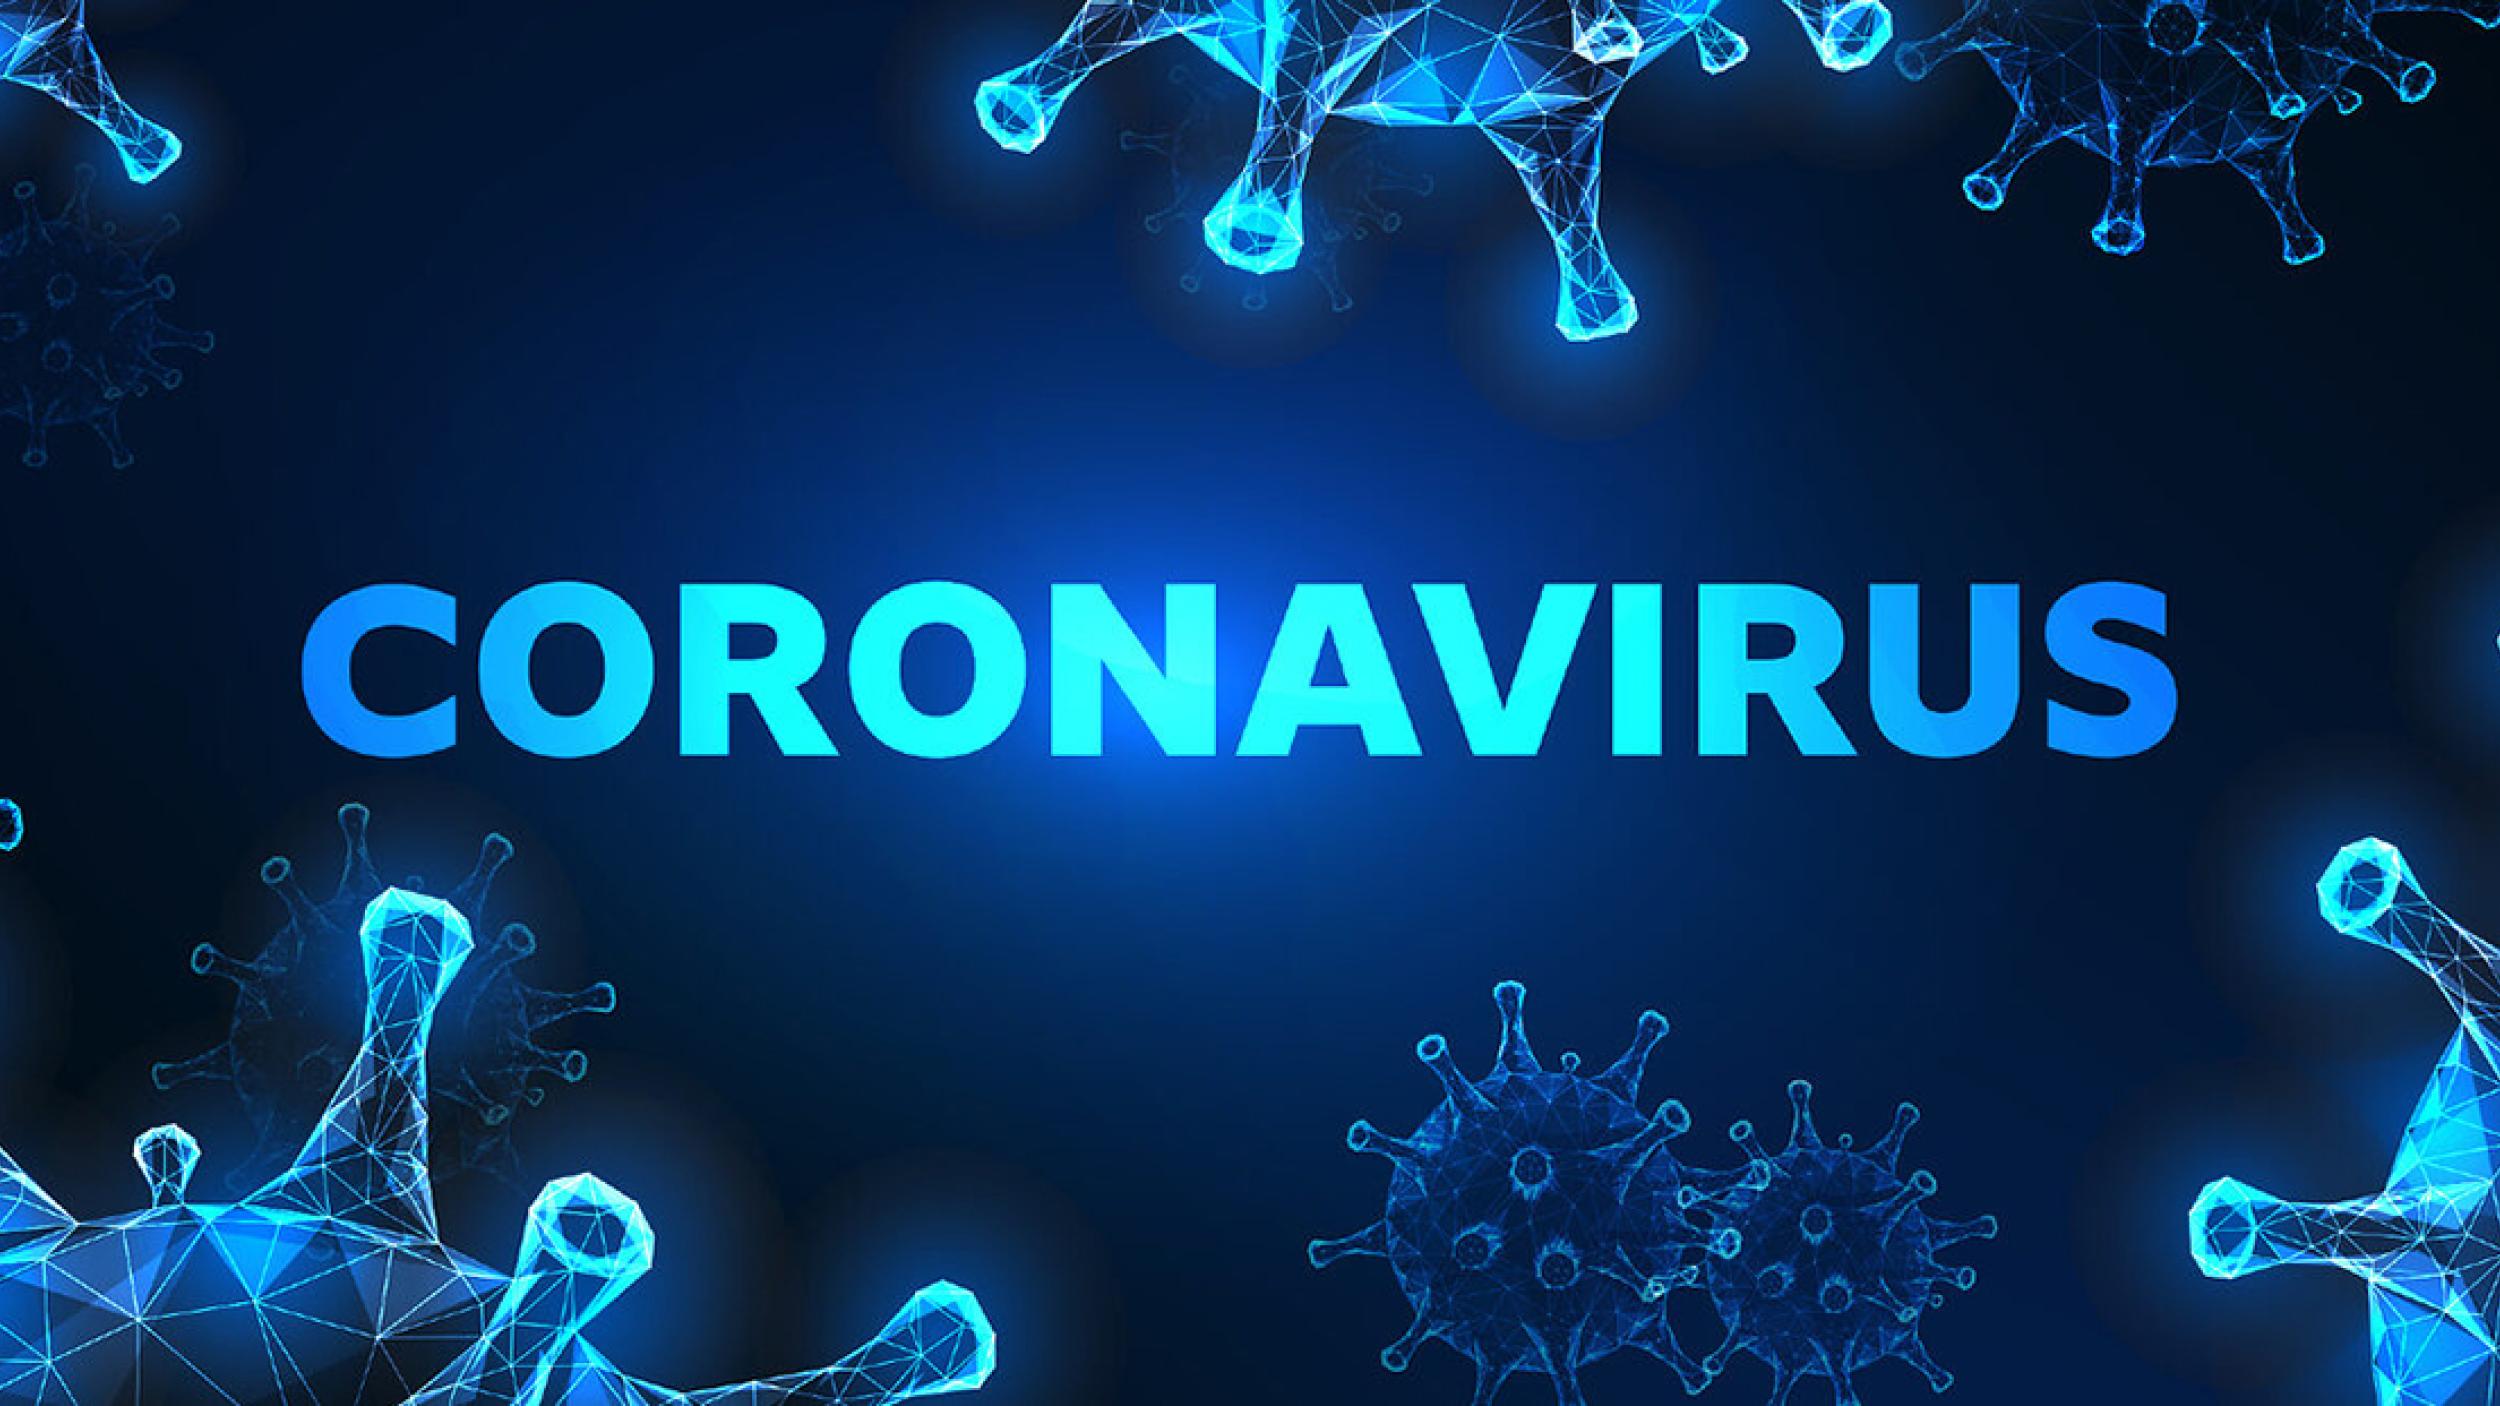 Titelbild mit Schriftzug "CORONAVIRUS" und Bakterienillustrationen